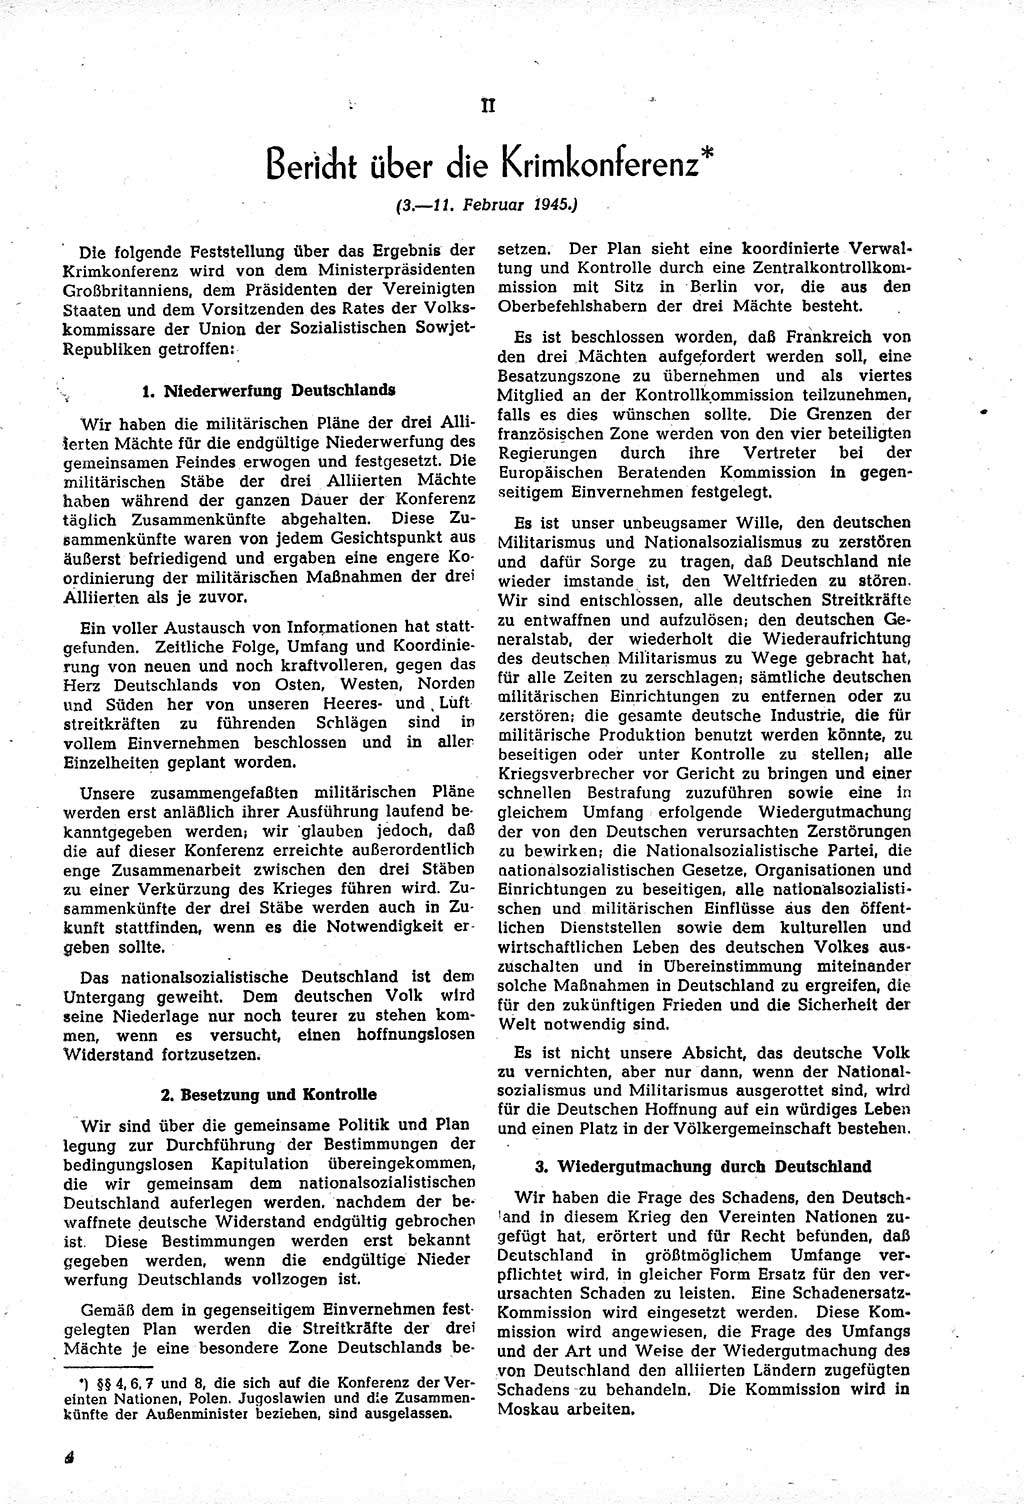 Amtsblatt des Kontrollrats (ABlKR) in Deutschland, Ergänzungsblatt Nr. 1, Sammlung von Urkunden betreffend die Errichtung der Alliierten Kontrollbehörde 1945, Seite 4 (ABlKR Dtl., Erg. Bl. 1 1945, S. 4)